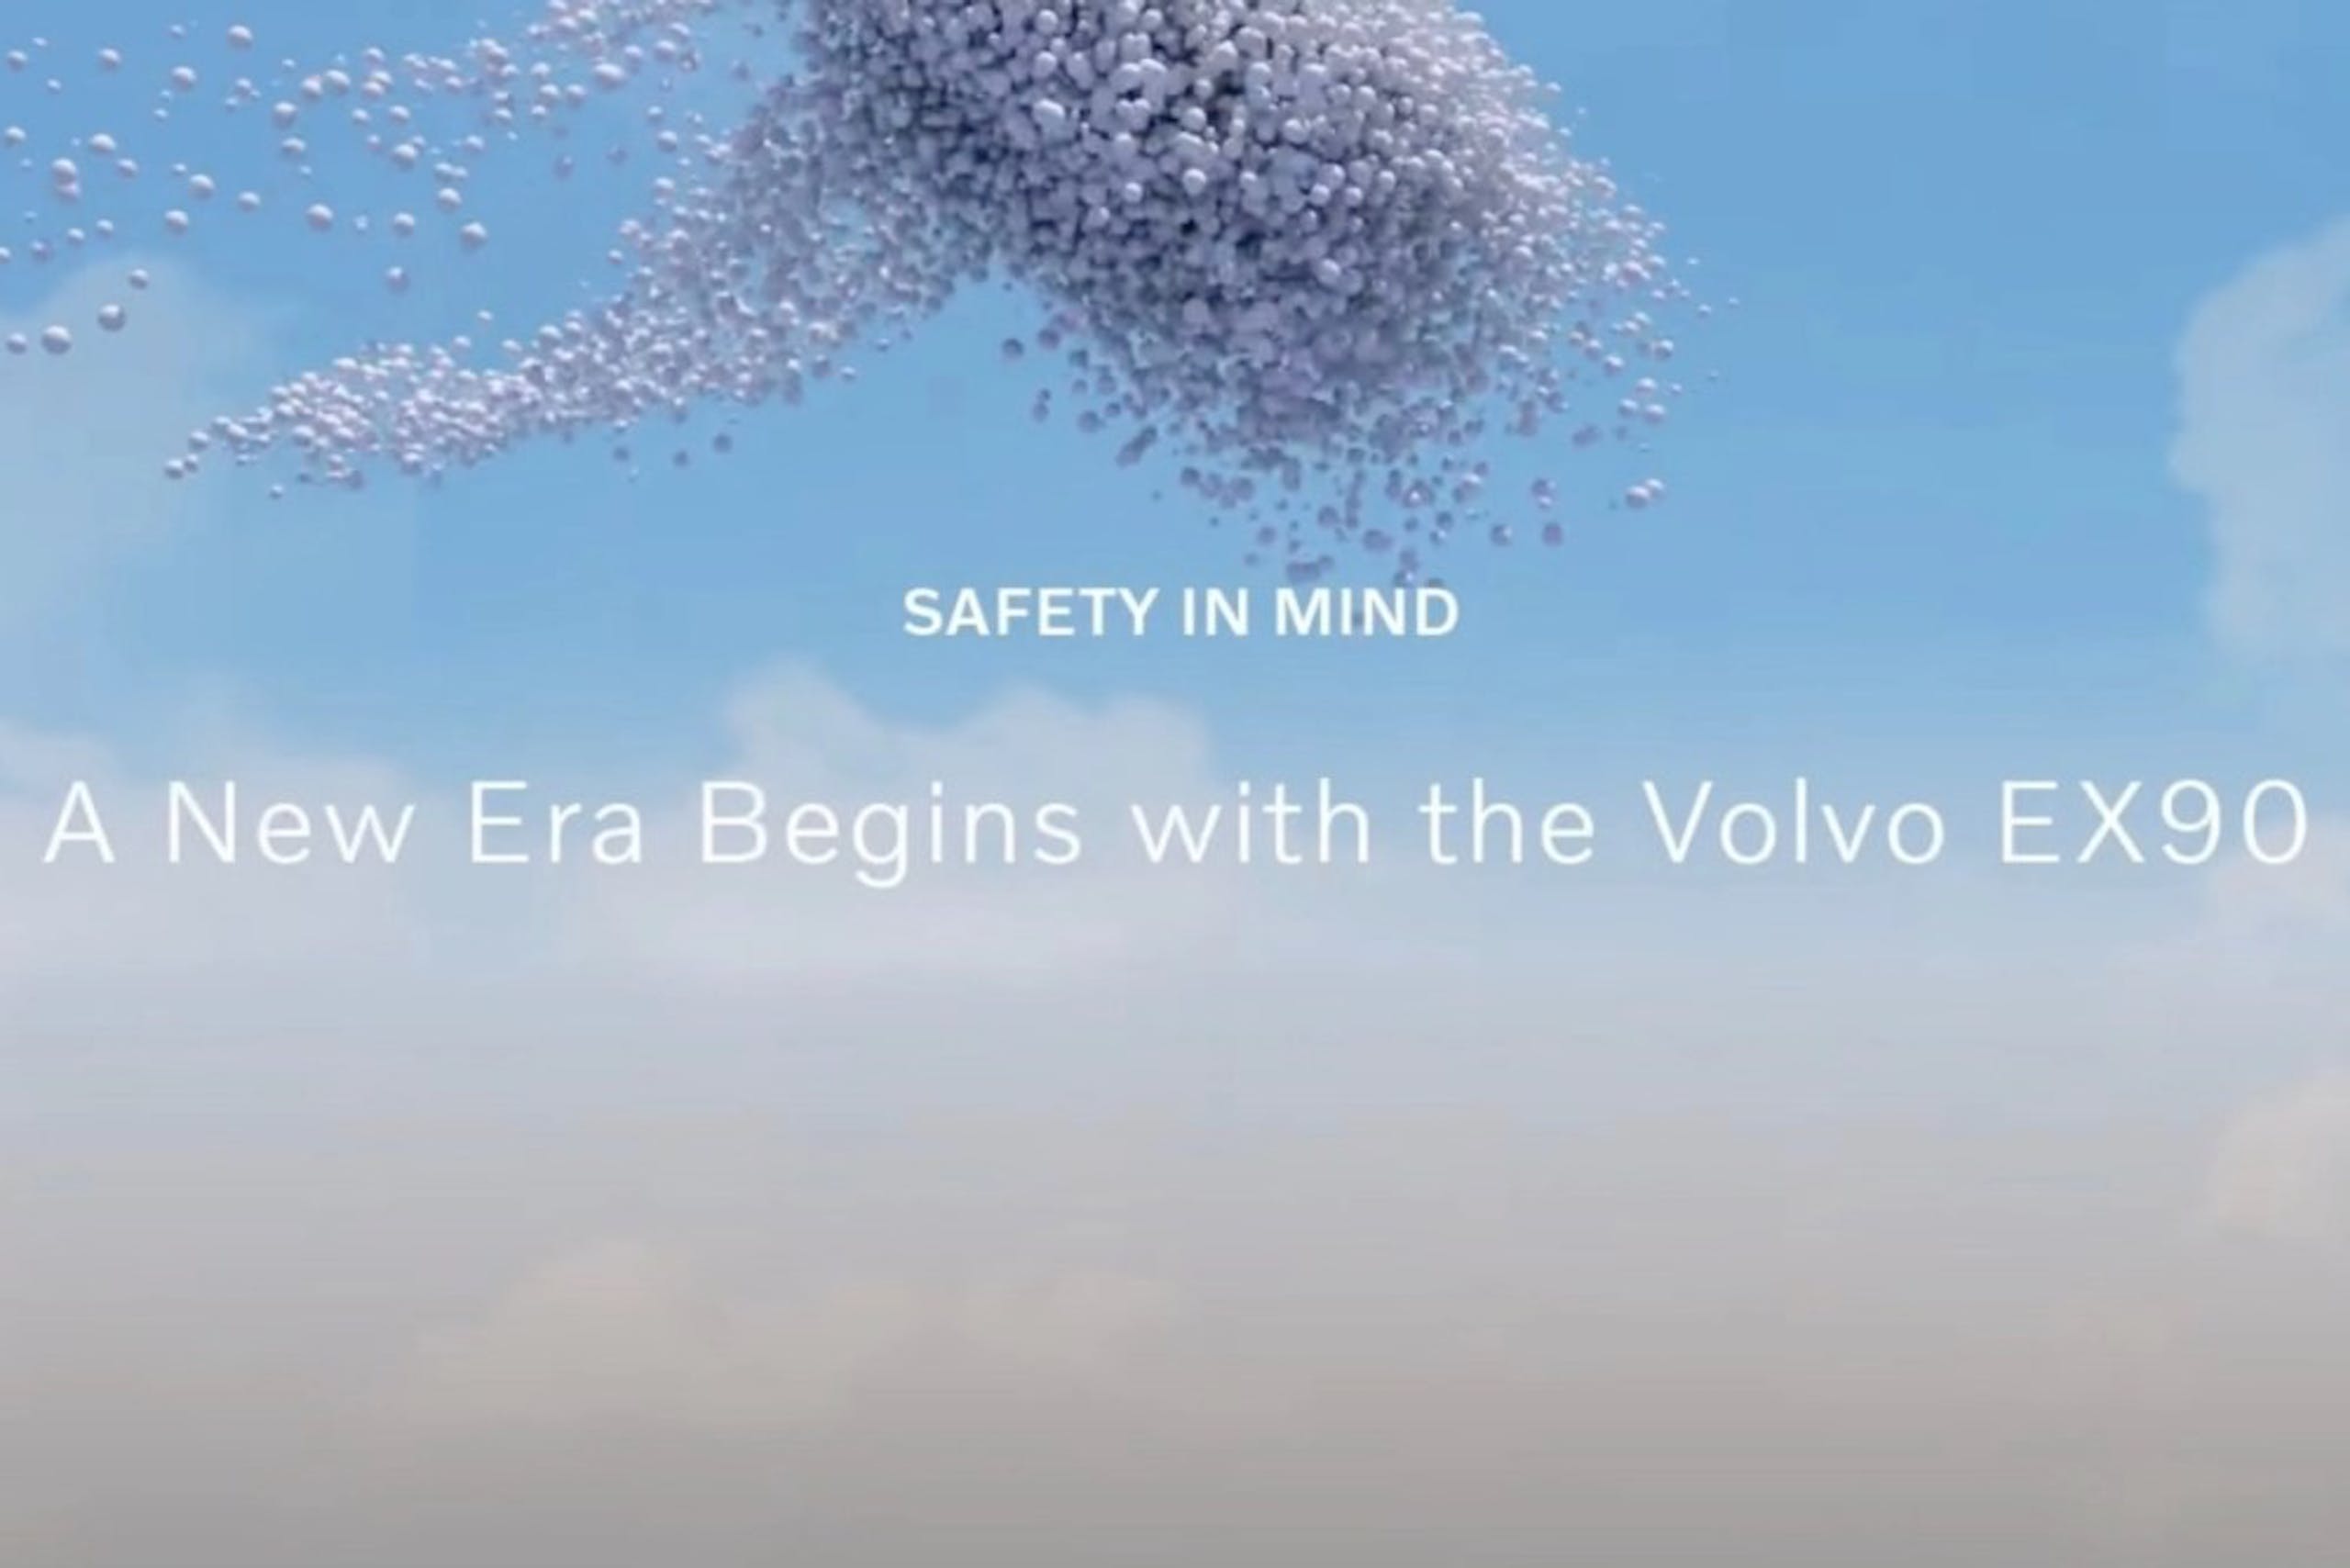 照片中提到了SAFETY IN MIND、A New Era Begins with the Volvo EX90，跟薩特瓦有關，包含了天空、馬什迪吉、運動型多功能車、沃爾沃汽車、沃爾沃